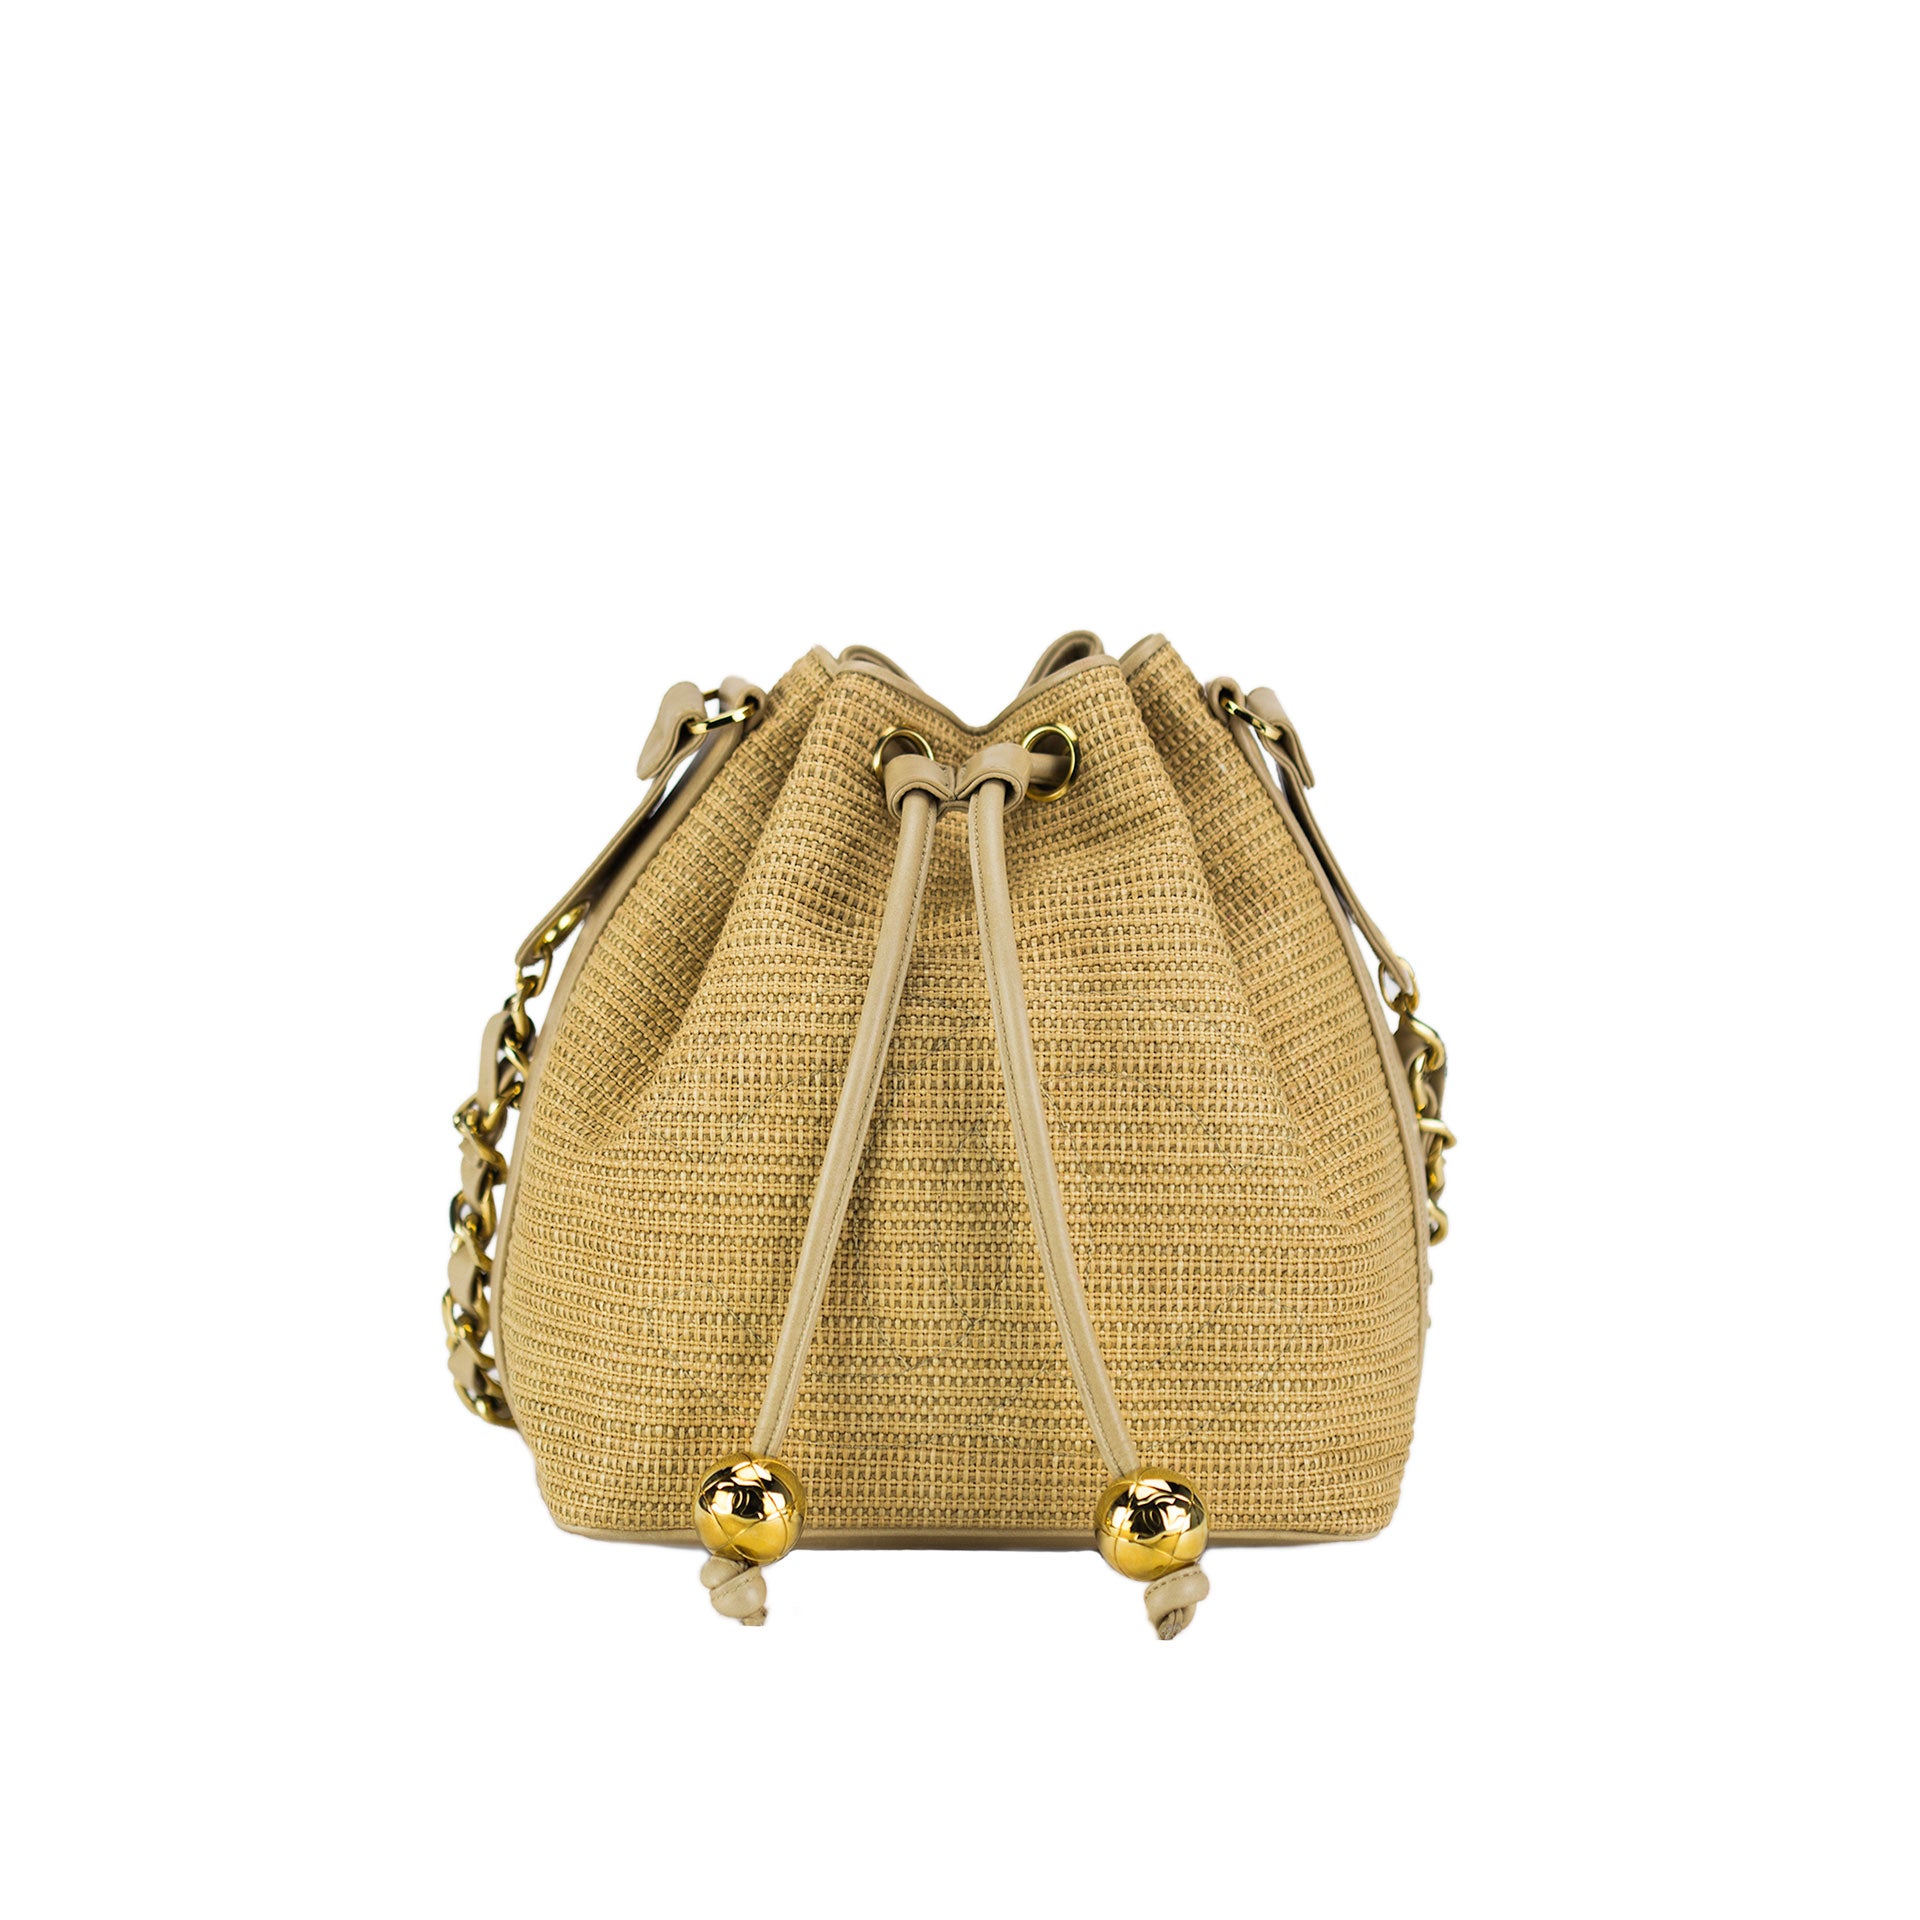 Buy Chanel Bucket Bag Online In India -  India